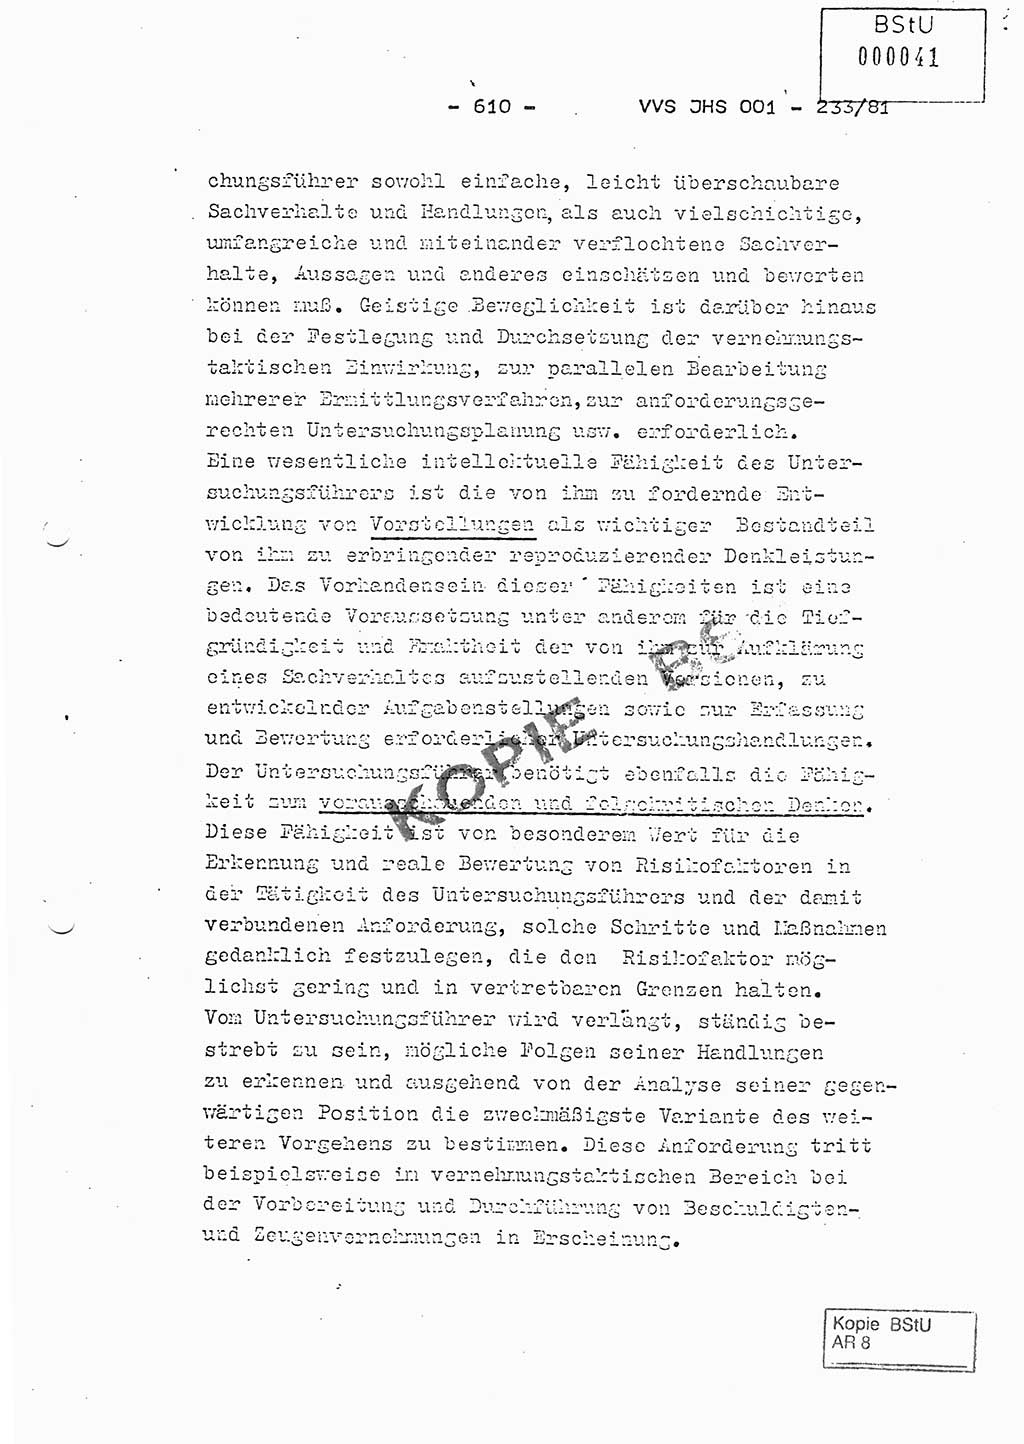 Dissertation Oberstleutnant Horst Zank (JHS), Oberstleutnant Dr. Karl-Heinz Knoblauch (JHS), Oberstleutnant Gustav-Adolf Kowalewski (HA Ⅸ), Oberstleutnant Wolfgang Plötner (HA Ⅸ), Ministerium für Staatssicherheit (MfS) [Deutsche Demokratische Republik (DDR)], Juristische Hochschule (JHS), Vertrauliche Verschlußsache (VVS) o001-233/81, Potsdam 1981, Blatt 610 (Diss. MfS DDR JHS VVS o001-233/81 1981, Bl. 610)